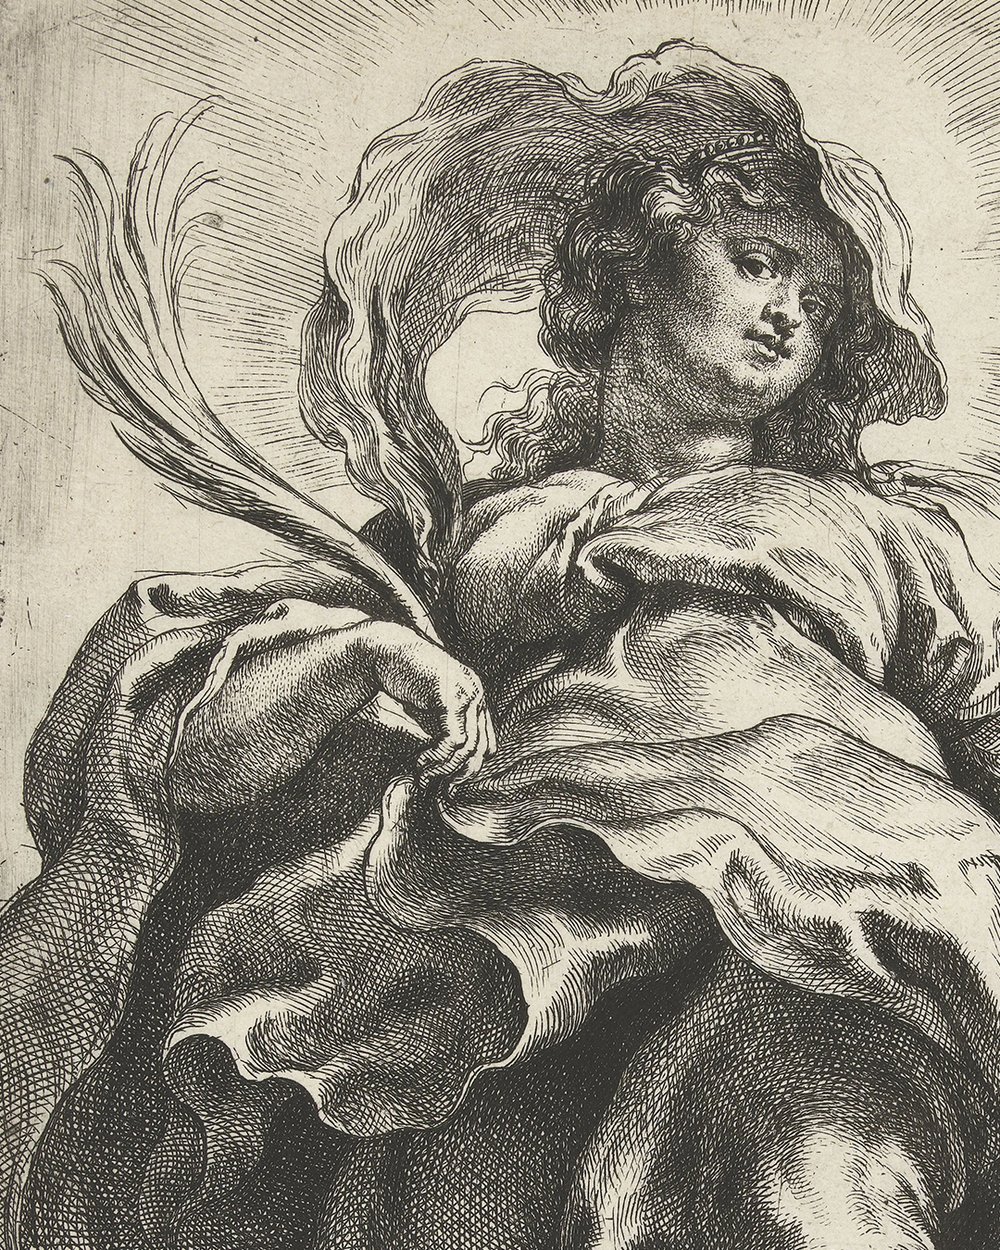 ''Saint Catherine of Alexandria'' (1590 - 1640)